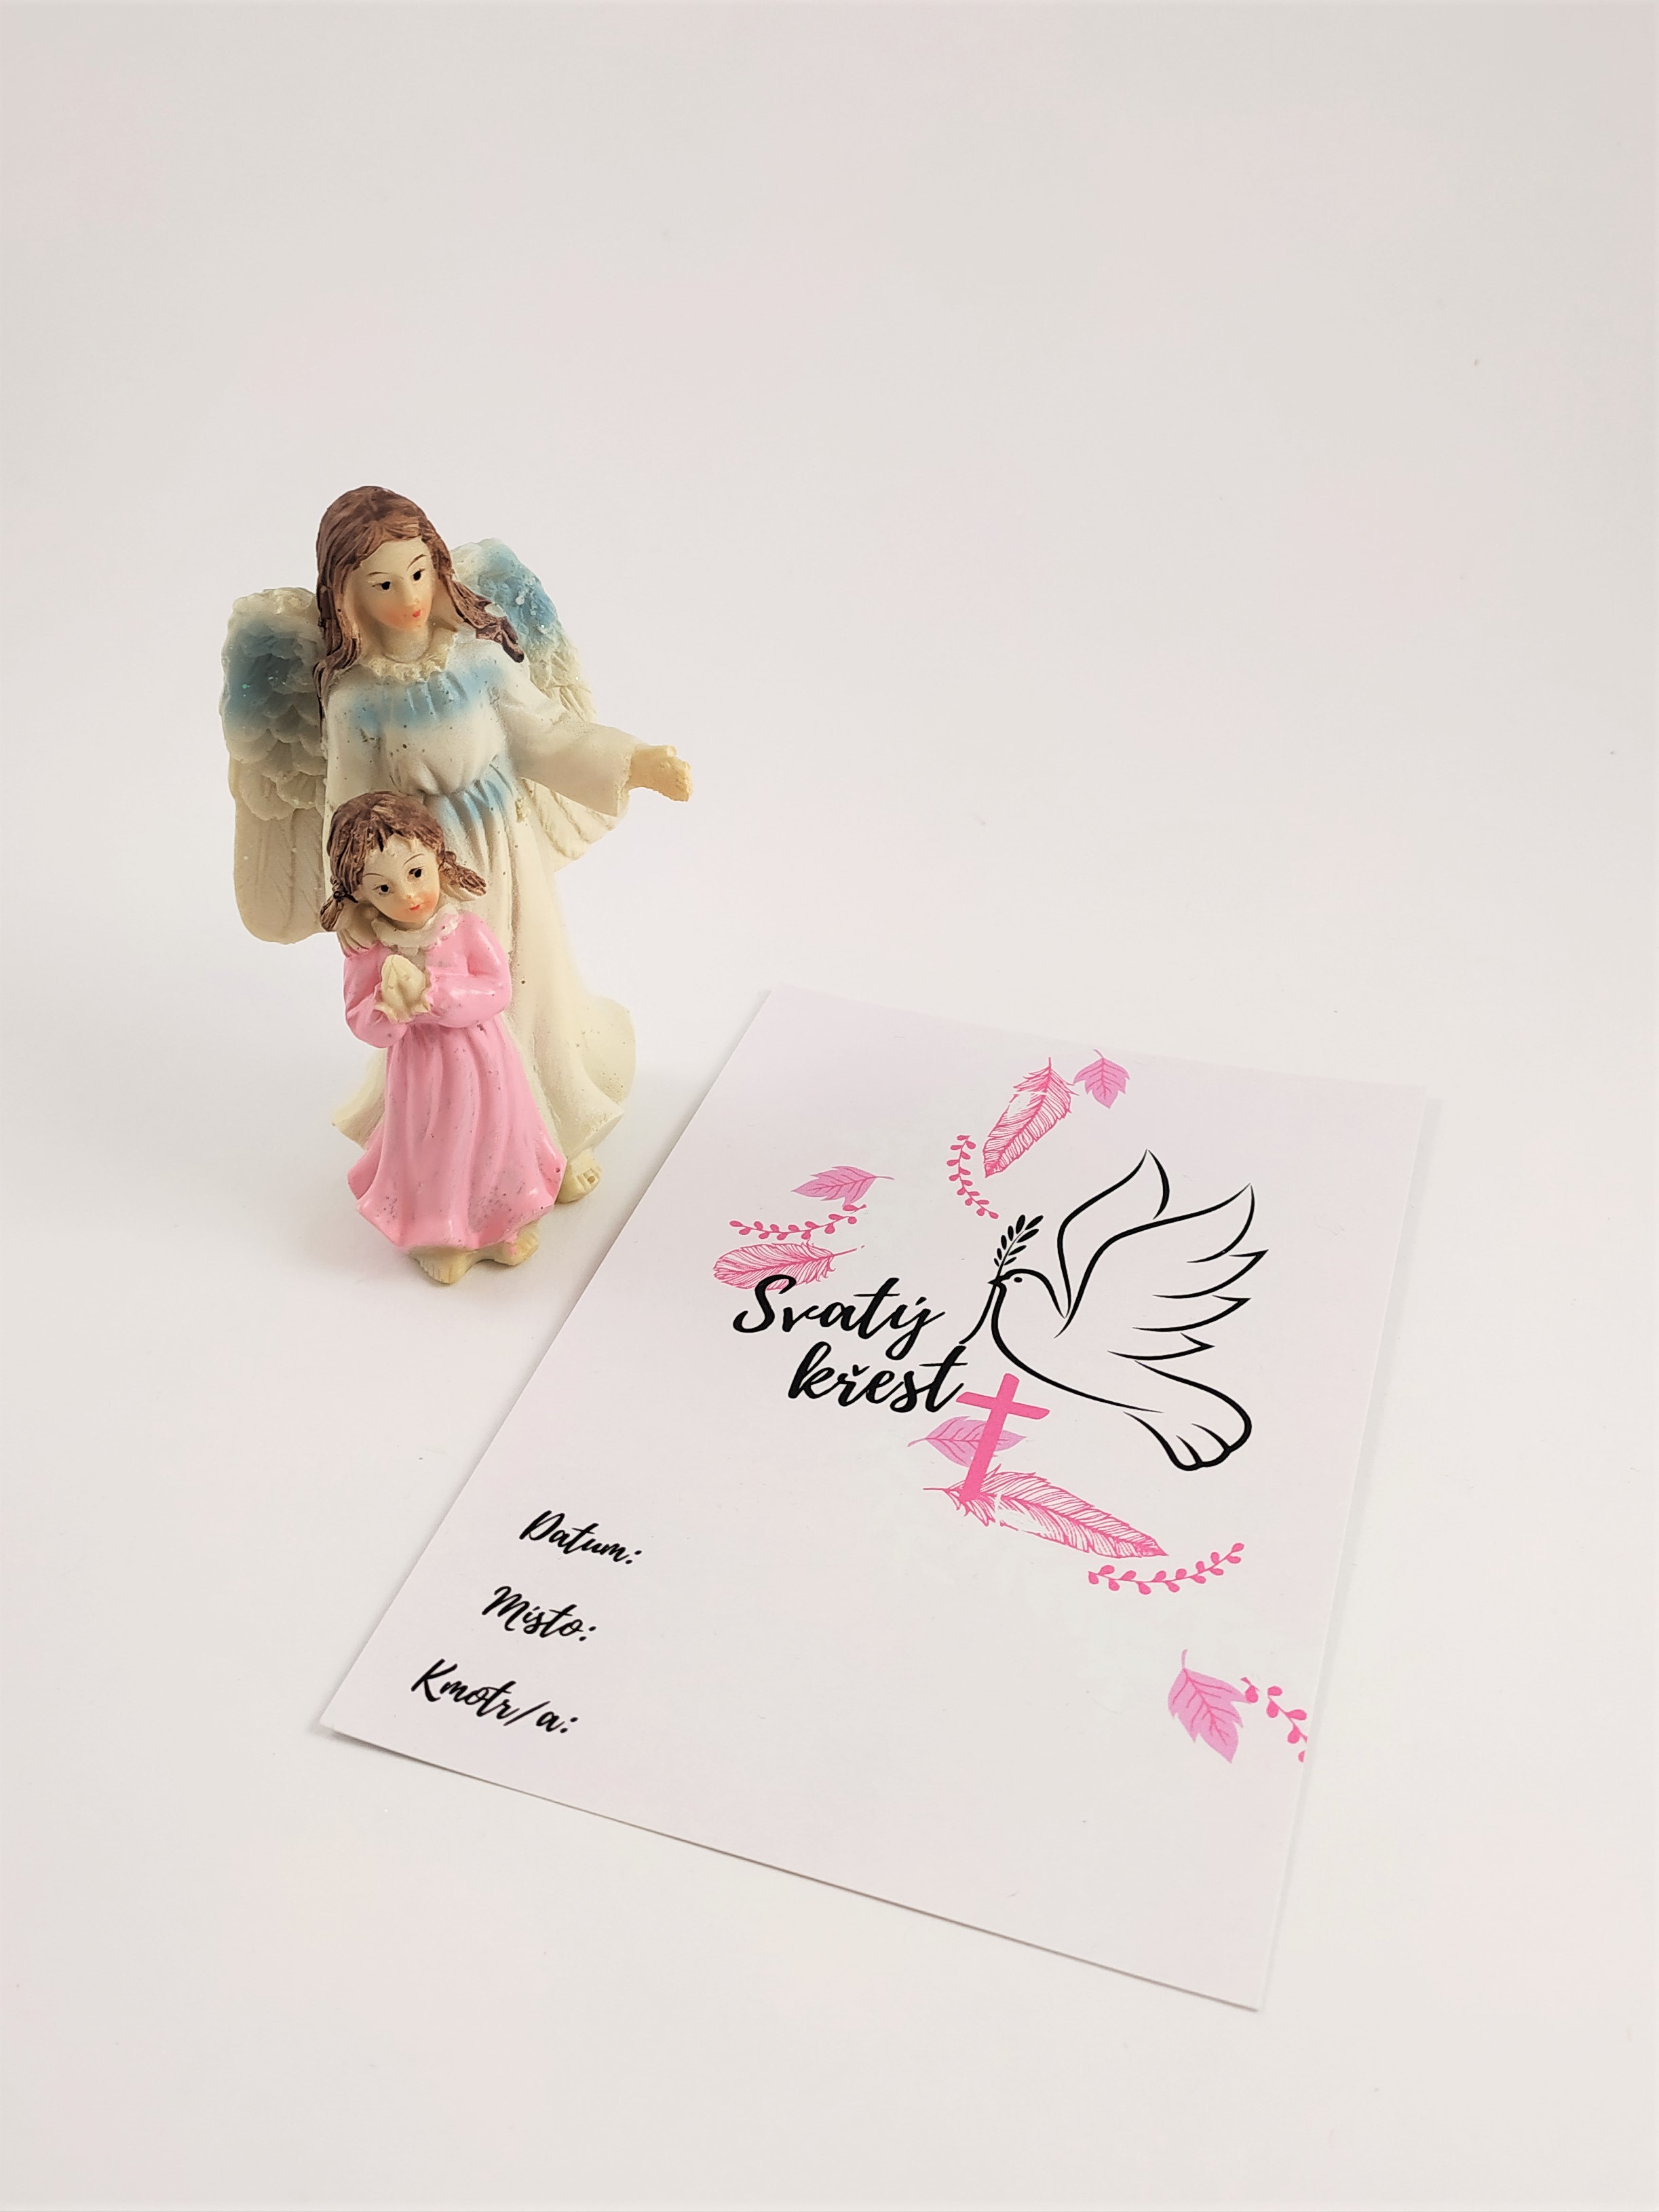 Dárek ke křtu, anděl strážný s holčičkou, upomínkový list